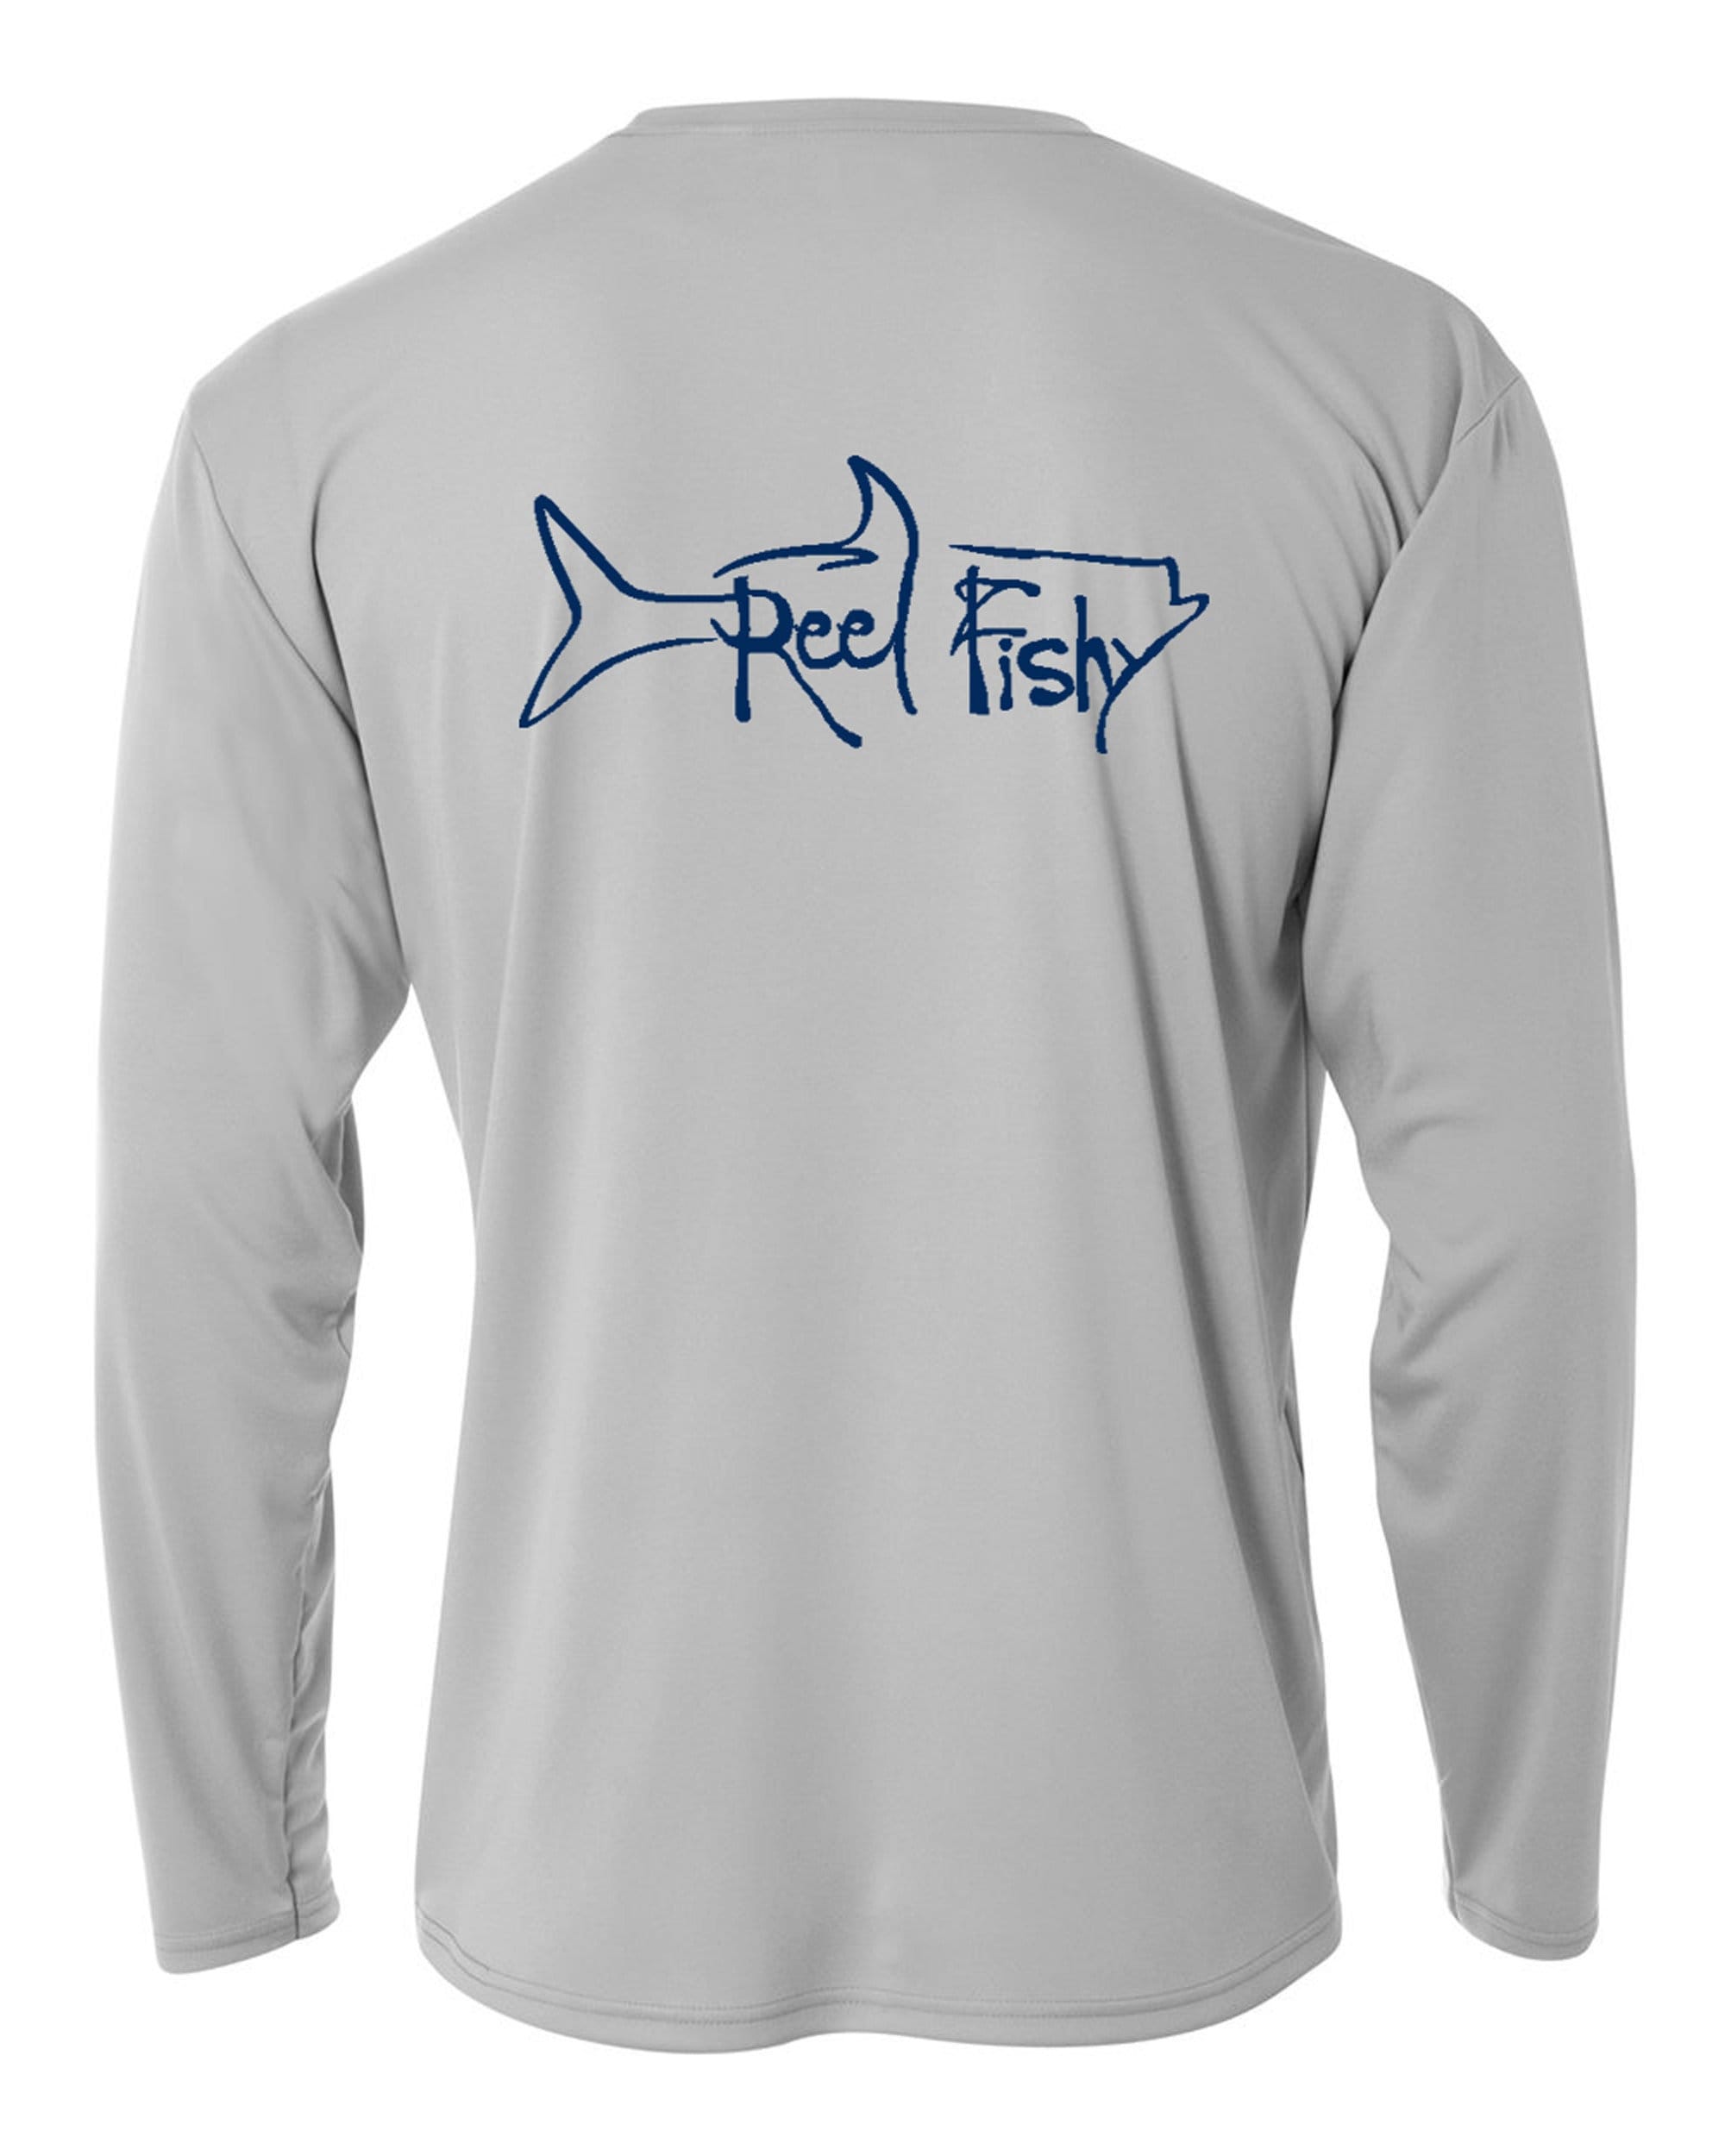 Kids Fishing Shirt, Youth Fishing Shirt, Performance Shirt, SPF Fishing Shirt, Tarpon Performance Shirt, Kids UV Sun Shirt, Tarpon Fishing